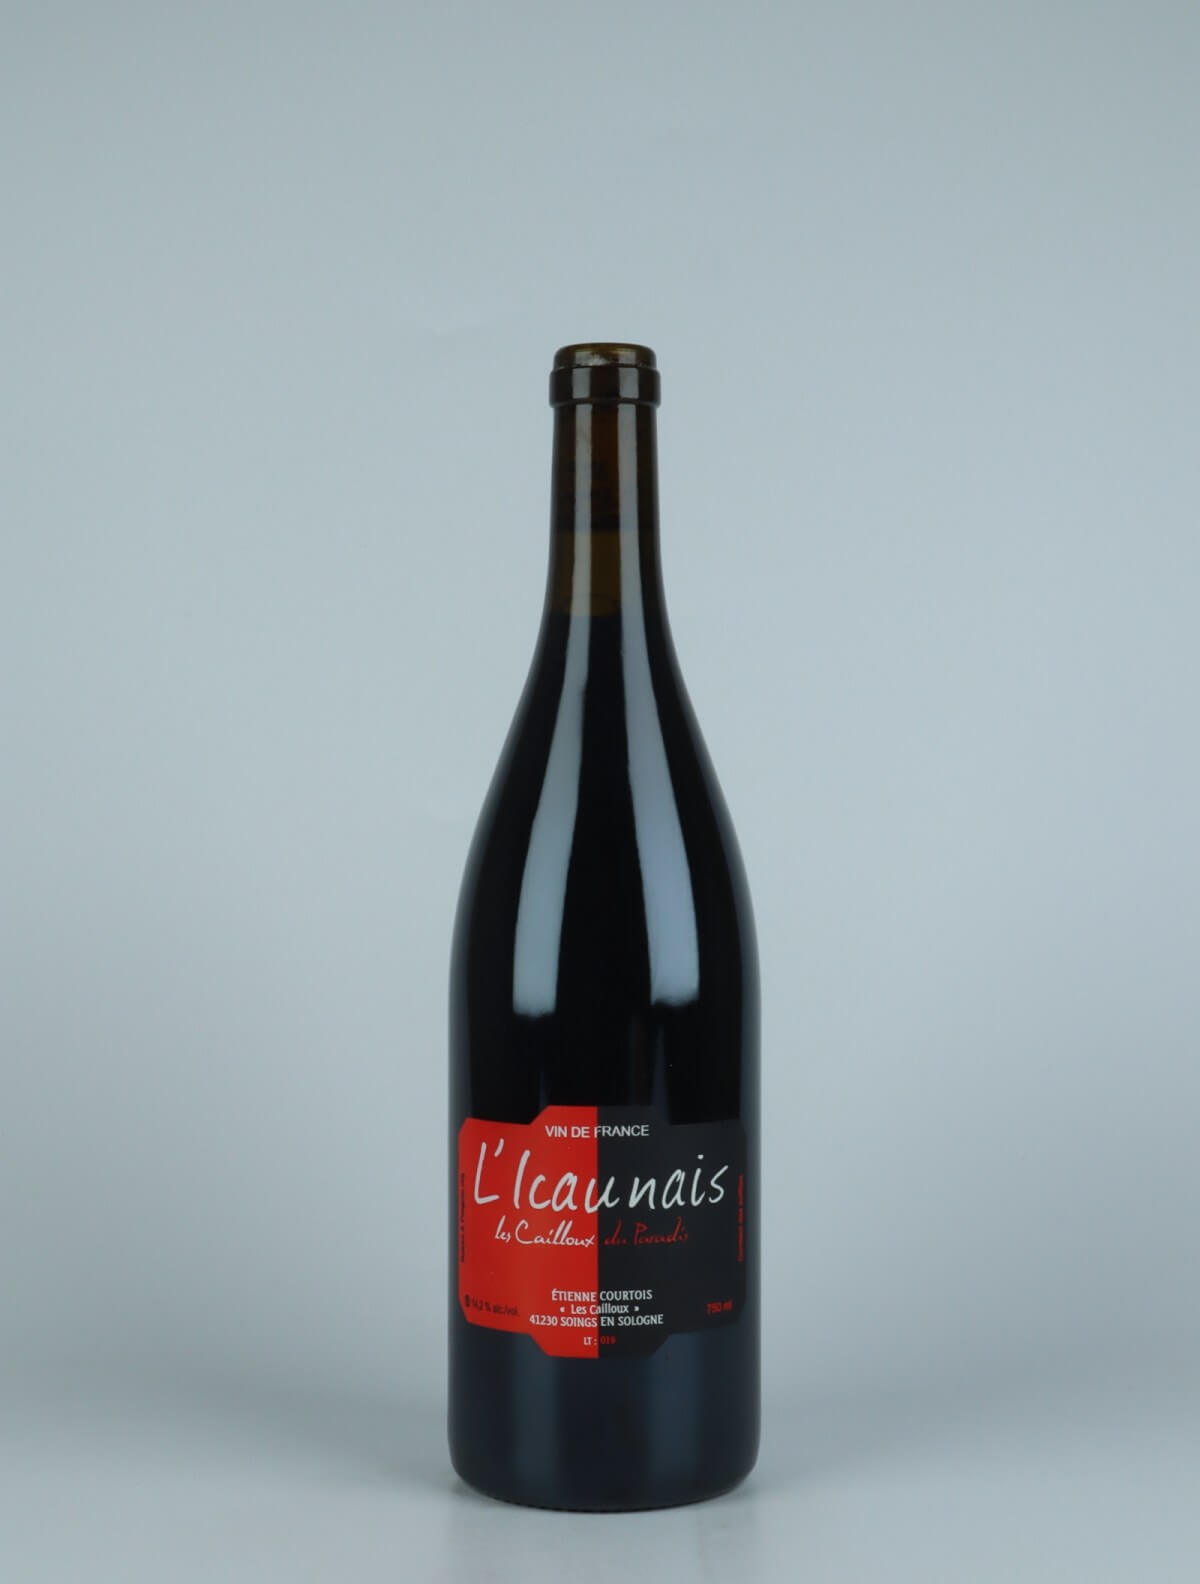 En flaske 2019 L'Icaunais Rødvin fra Etienne Courtois, Loire i Frankrig